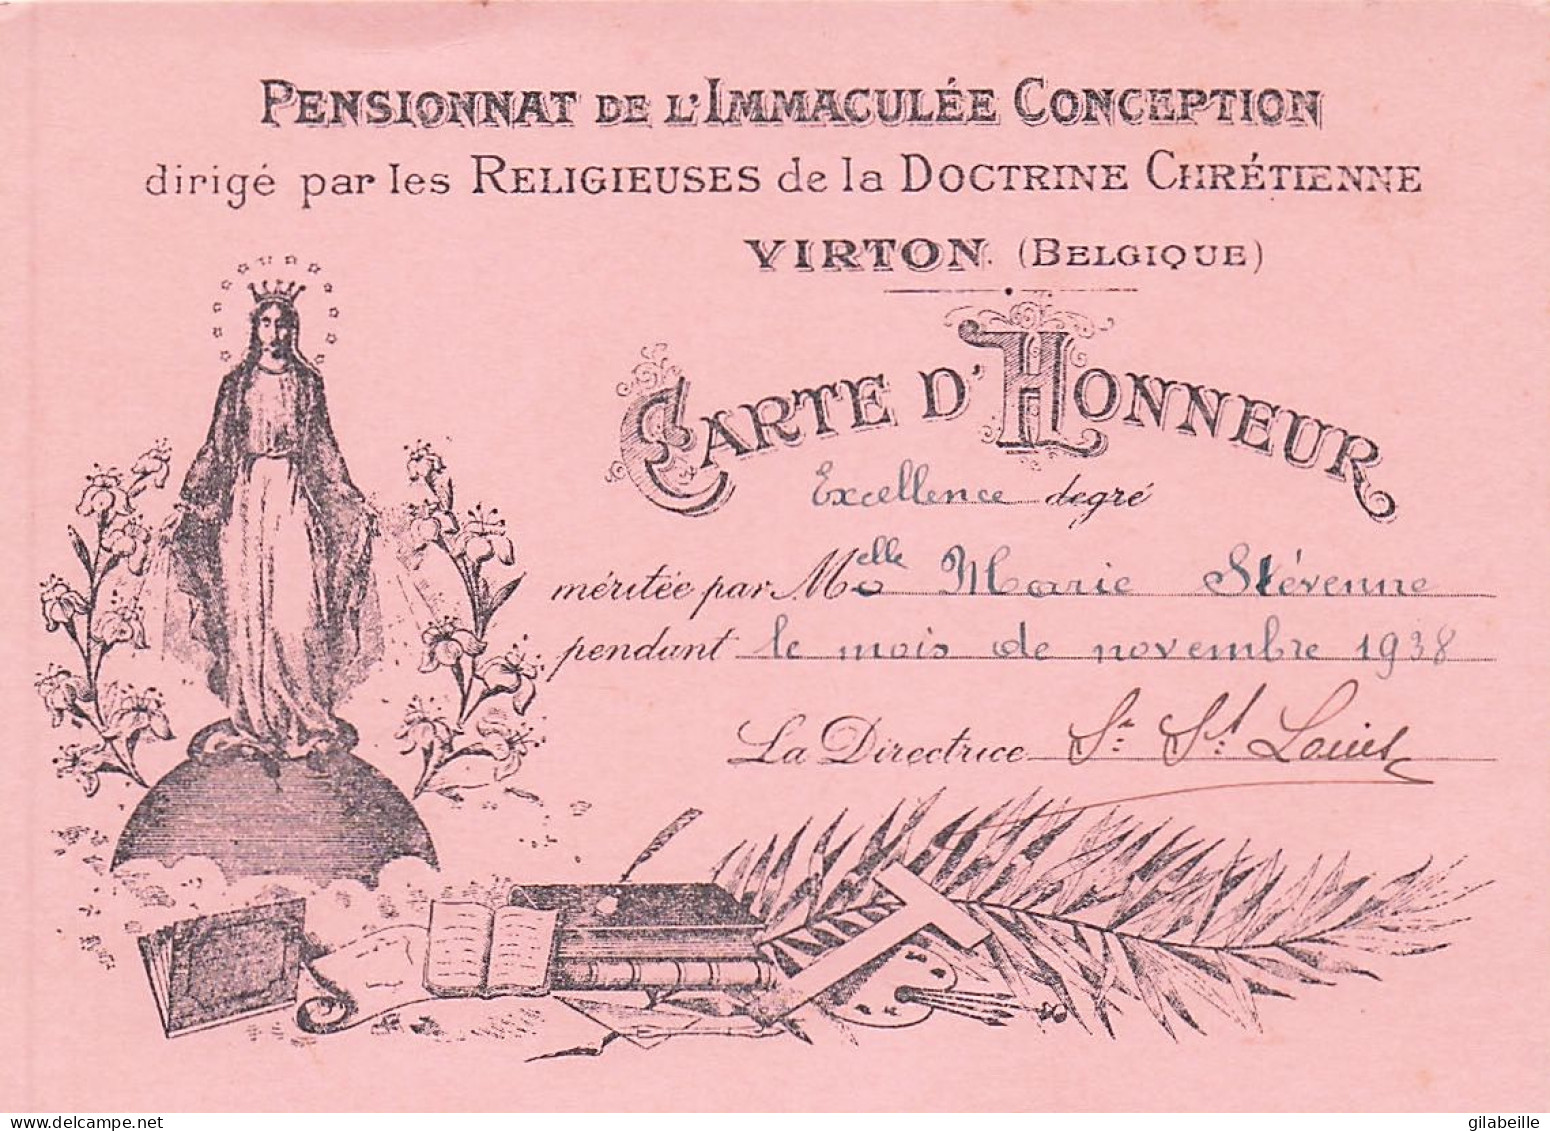 Luxembourg - VIRTON - Carte D'honneurdegré Excellence - Pensionnat De L'immaculé Conception - Novembre 1938 - Diplomas Y Calificaciones Escolares